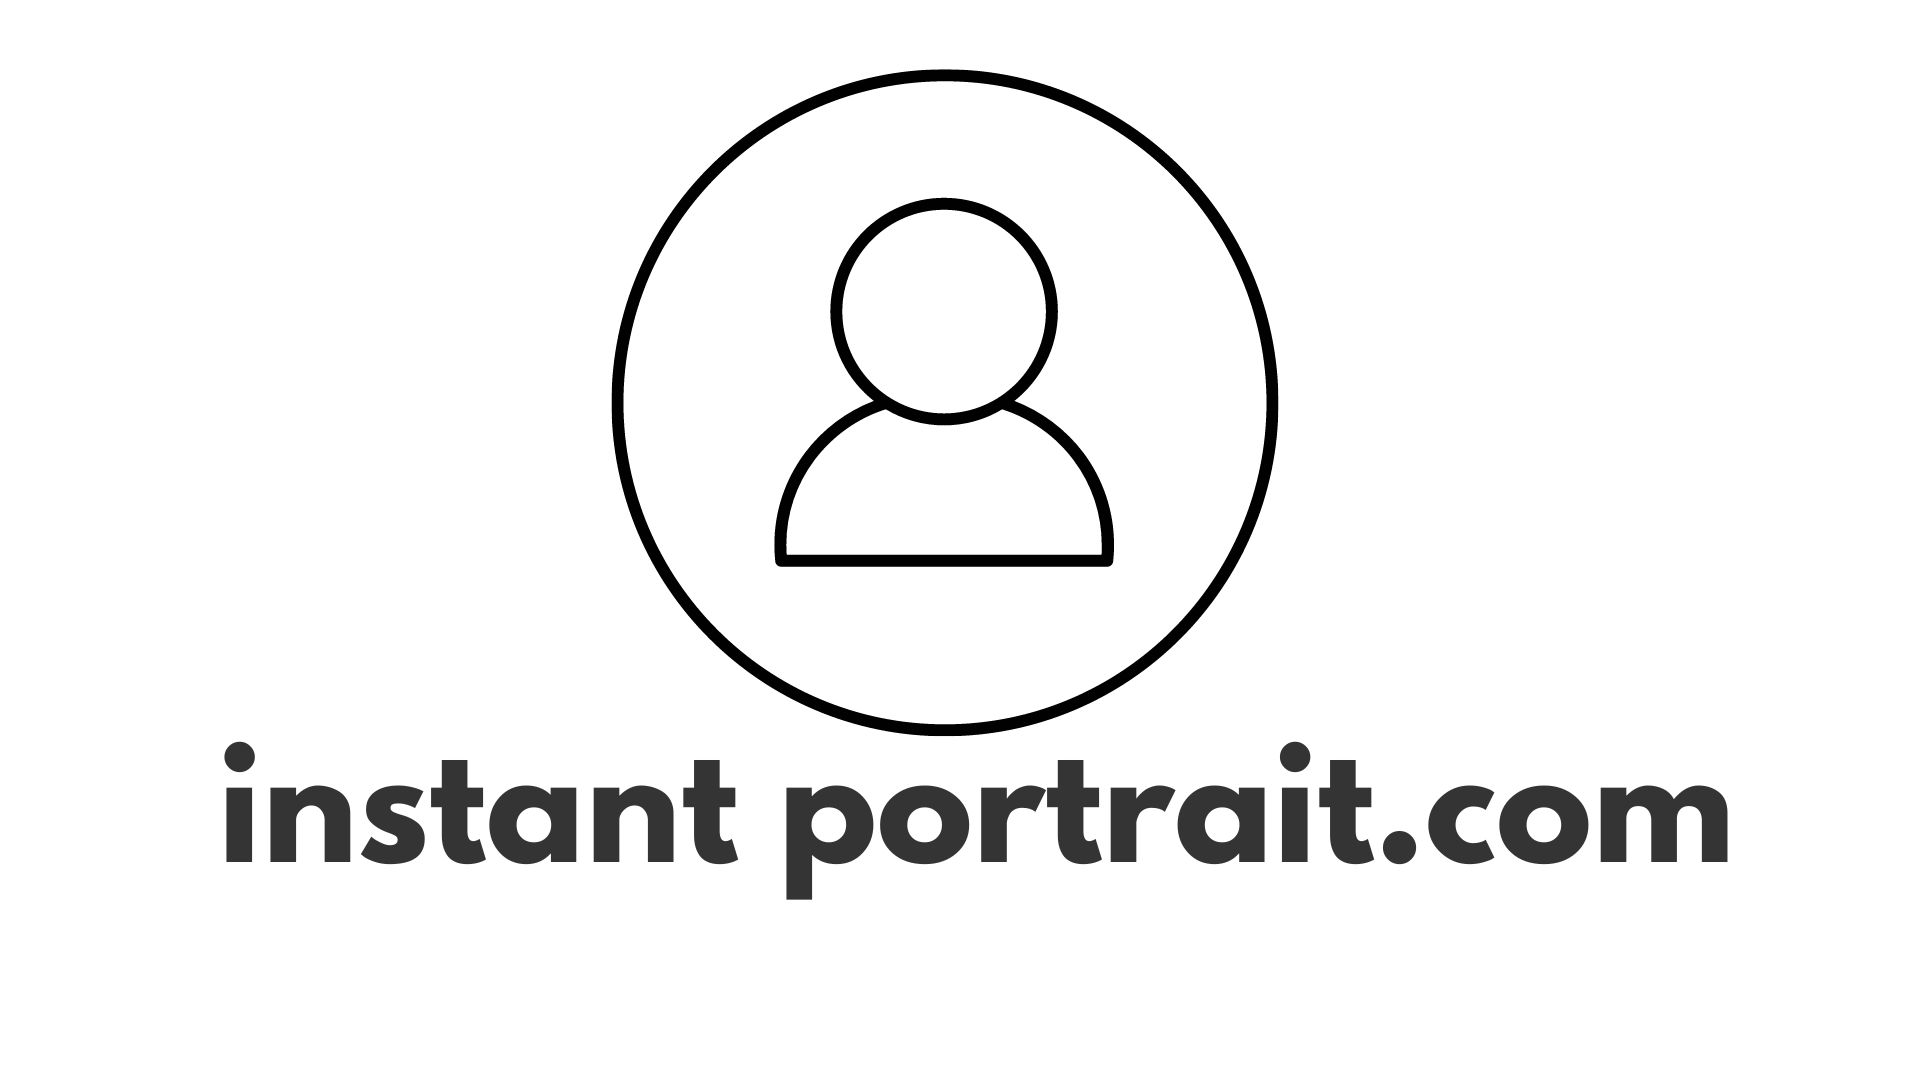 Generate portrait photos with instant-portrait.com